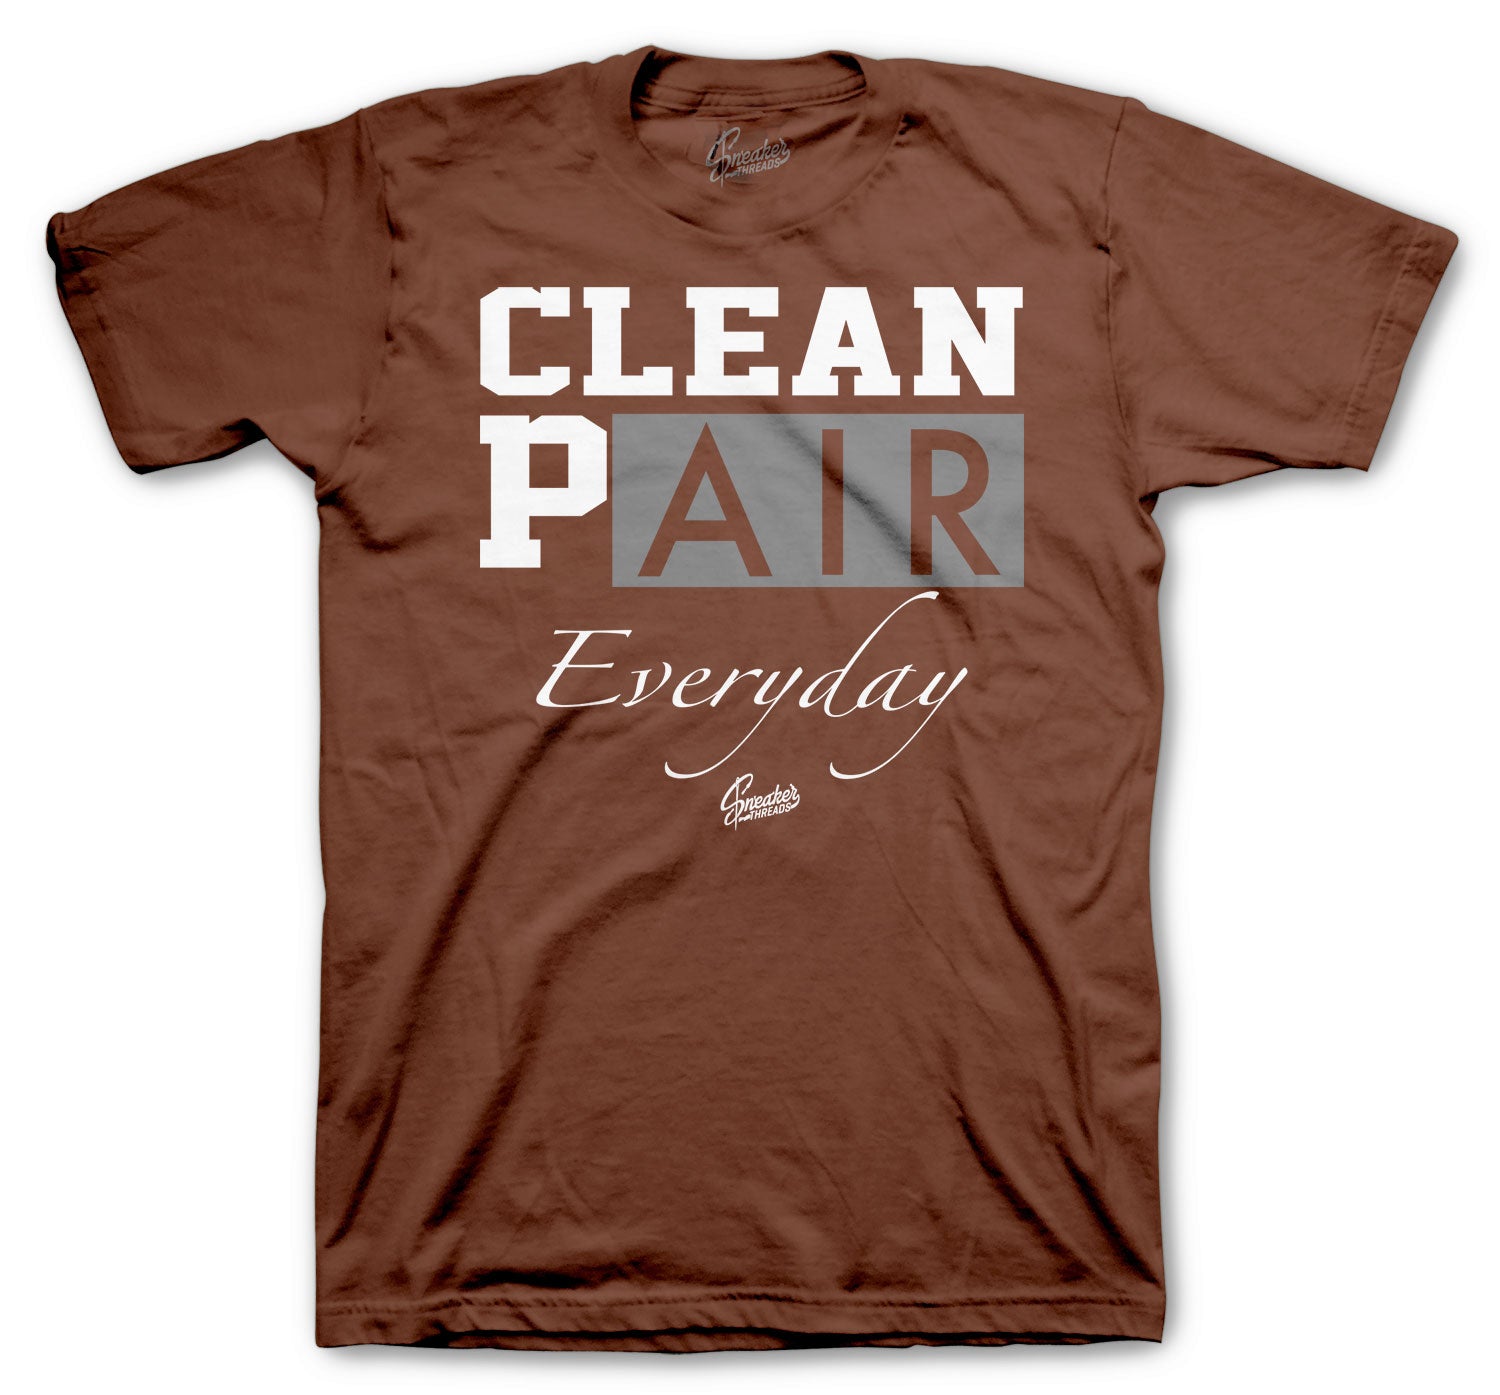 Retro 1 Light Army Shirt - Clean Pair - Brown